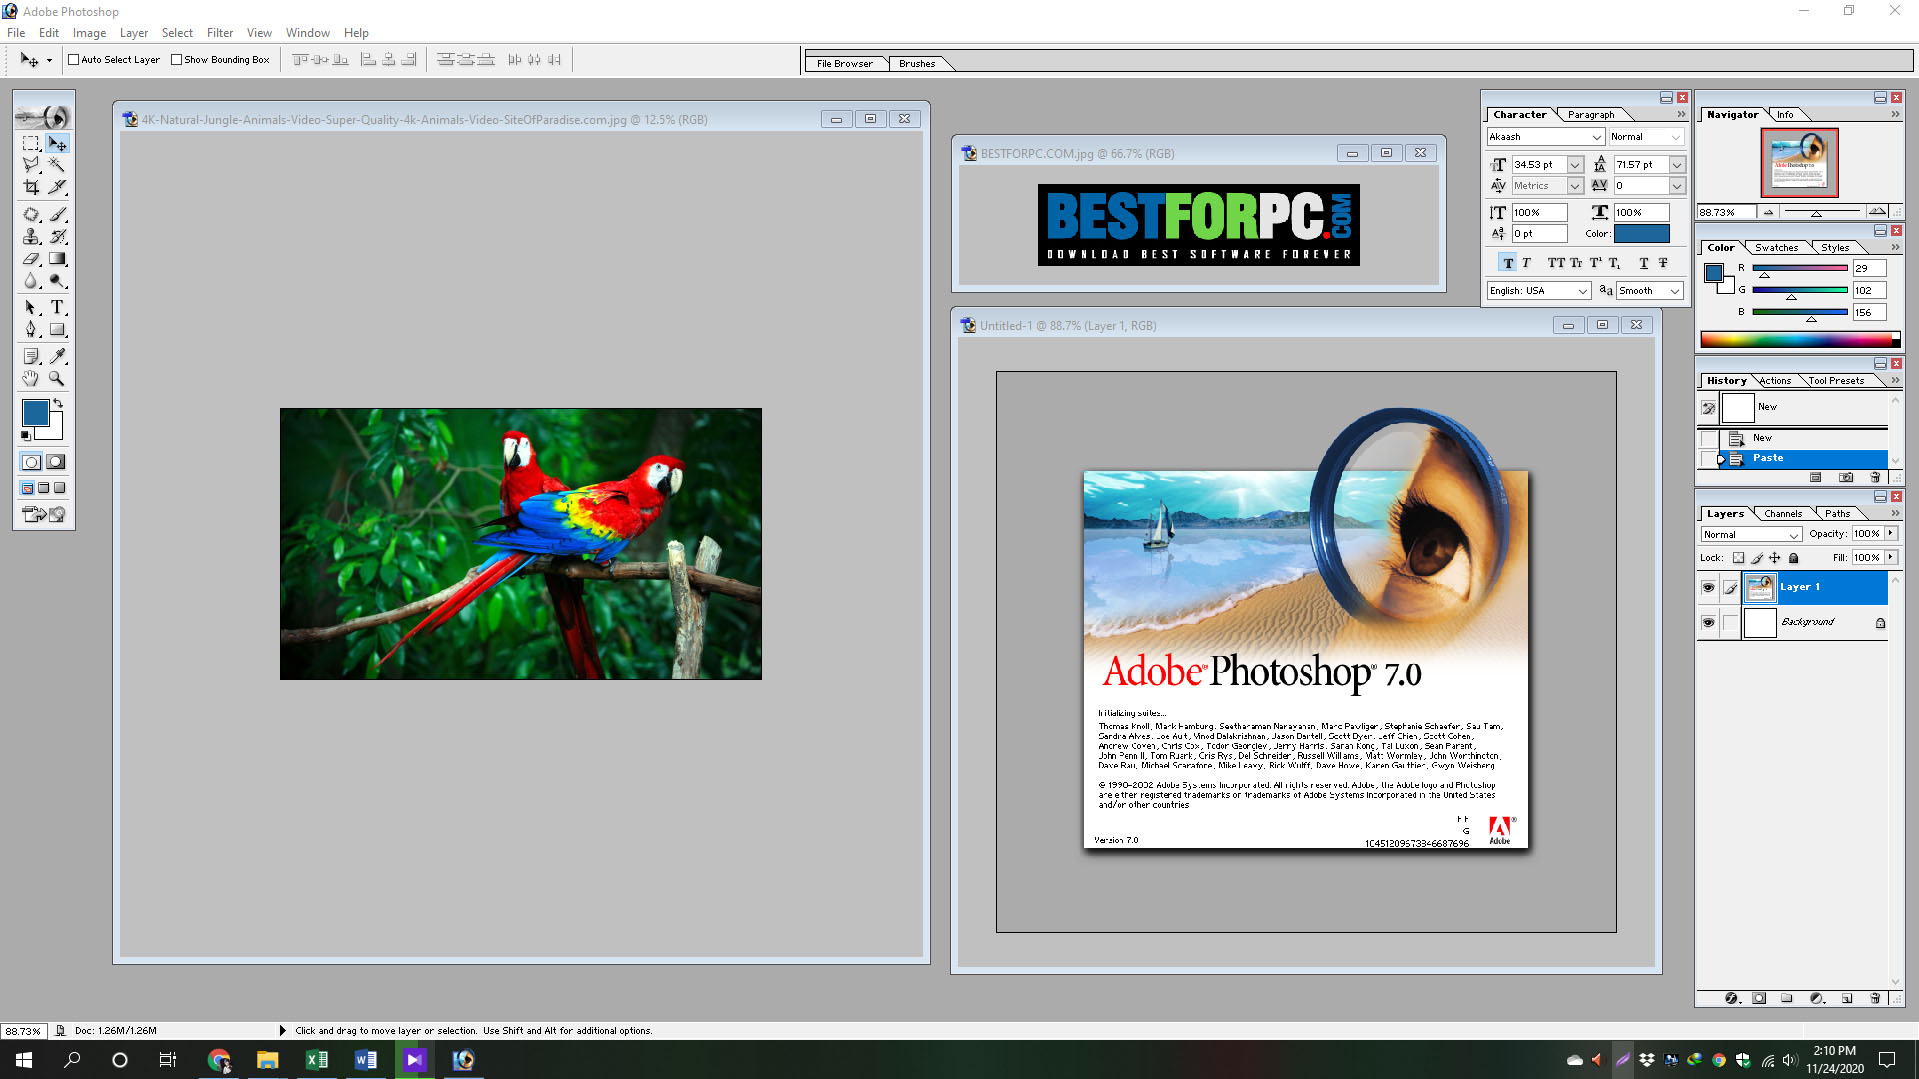 Adobe photoshop 7.0 windows 8.1 free download grigori grabovoi books free download